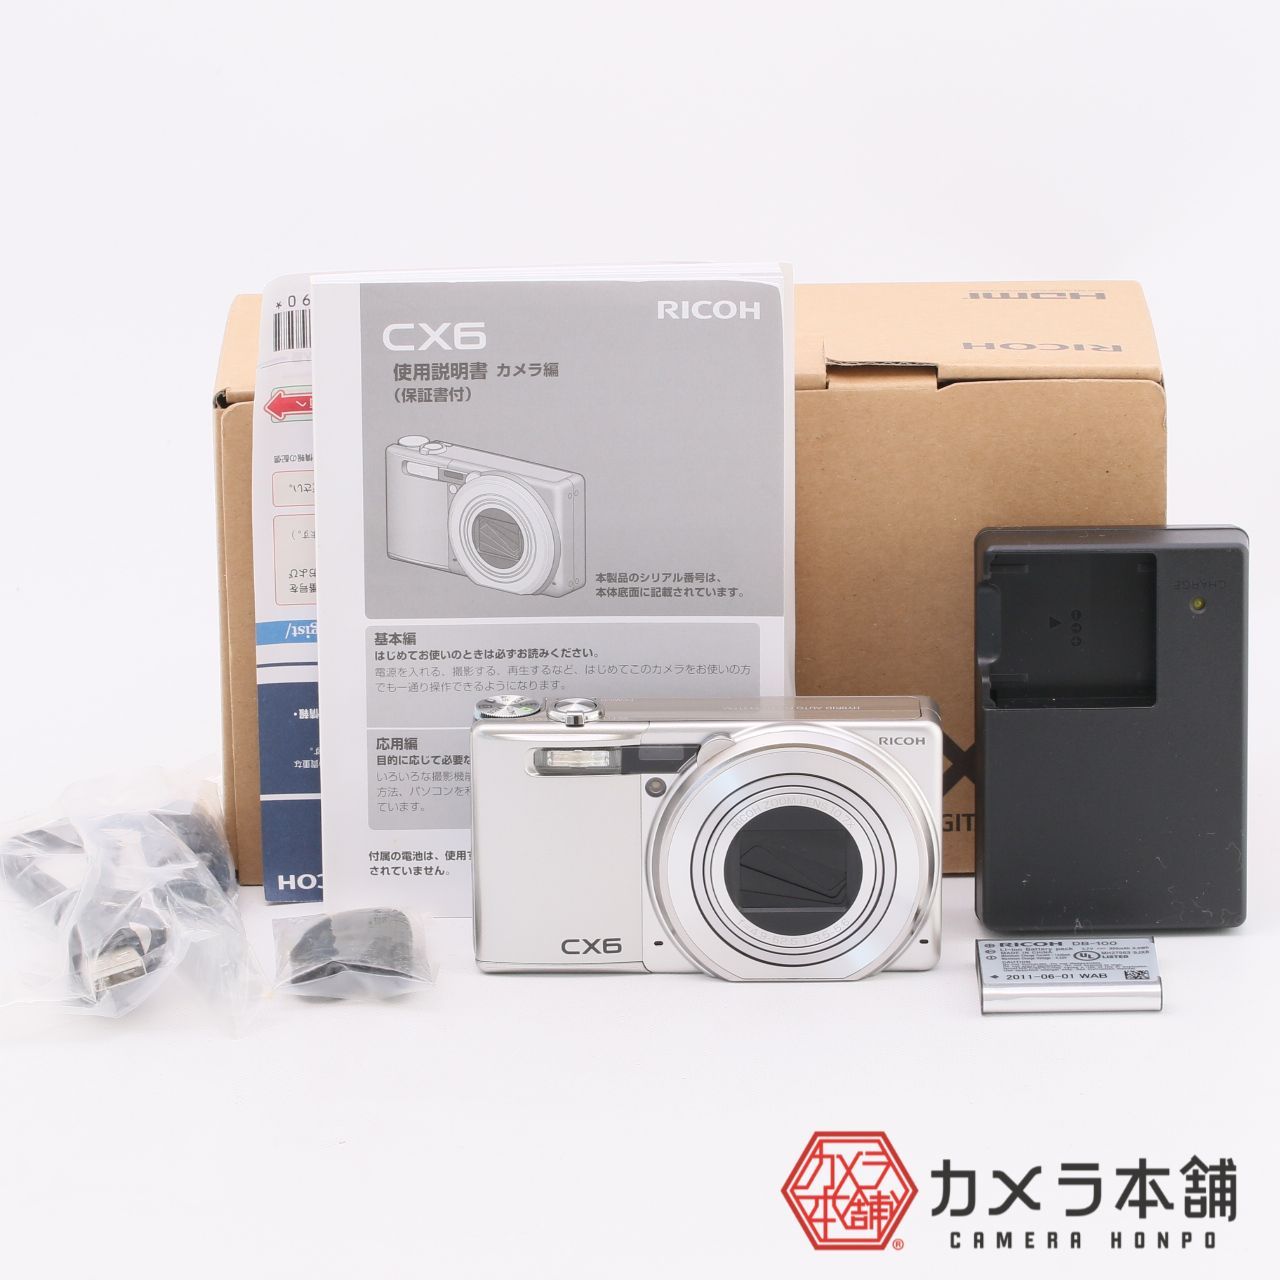 RICOH リコー デジタルカメラ CX6シルバー CX6-SL 新品未使用 カメラ本舗｜Camera honpo メルカリ